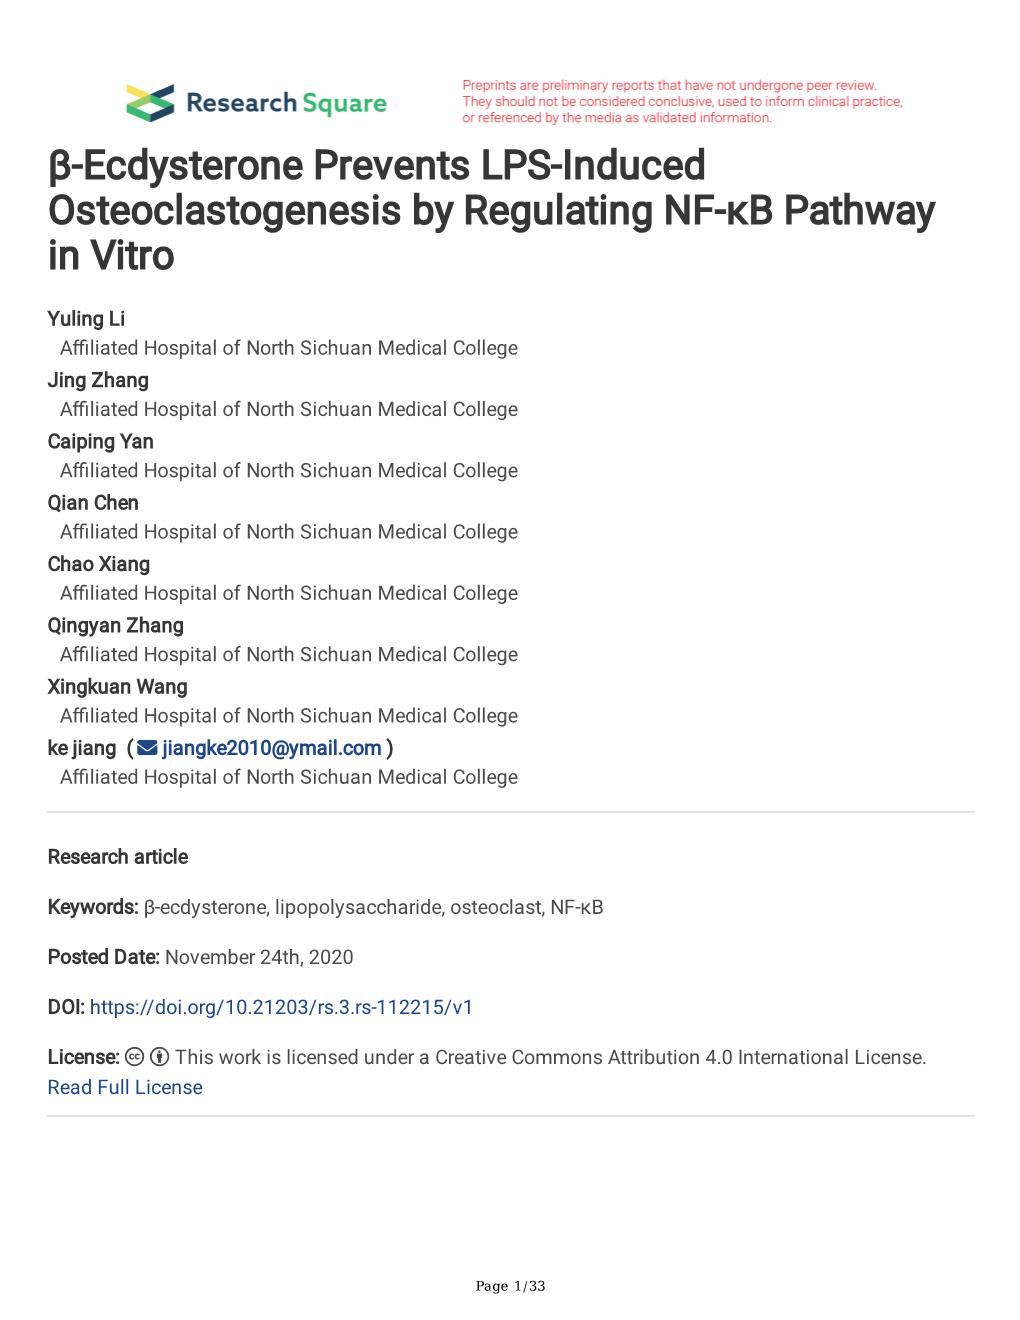 Β-Ecdysterone Prevents LPS-Induced Osteoclastogenesis by Regulating NF-Κb Pathway in Vitro